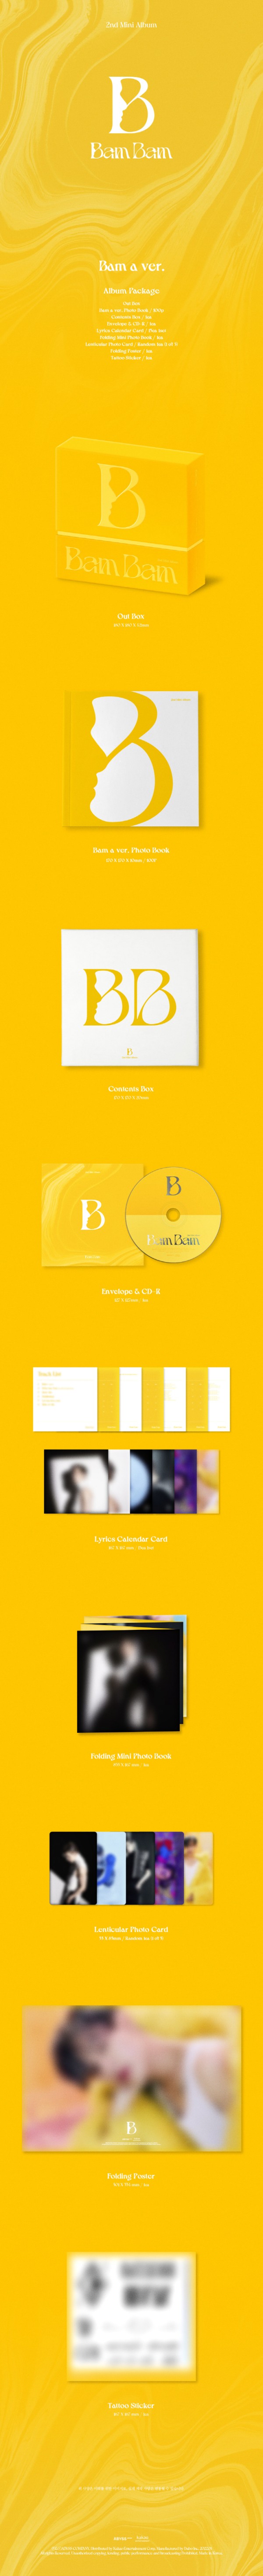 BamBam｜セカンド・ミニアルバム『B』｜